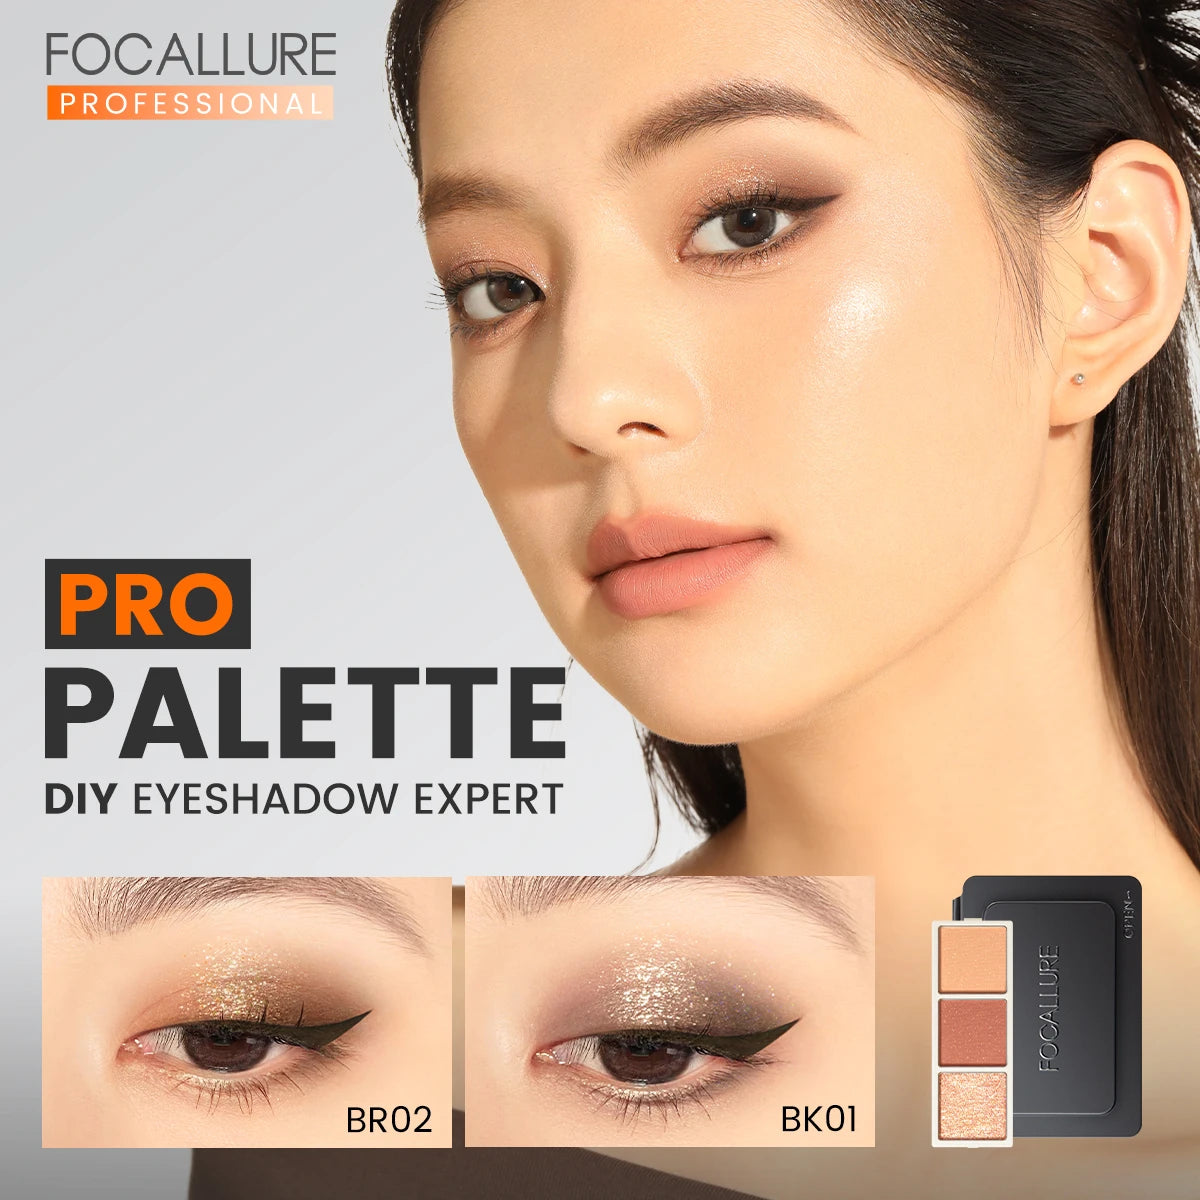 Focallure Professional Pro Palette DIY Eyeshadow Expert